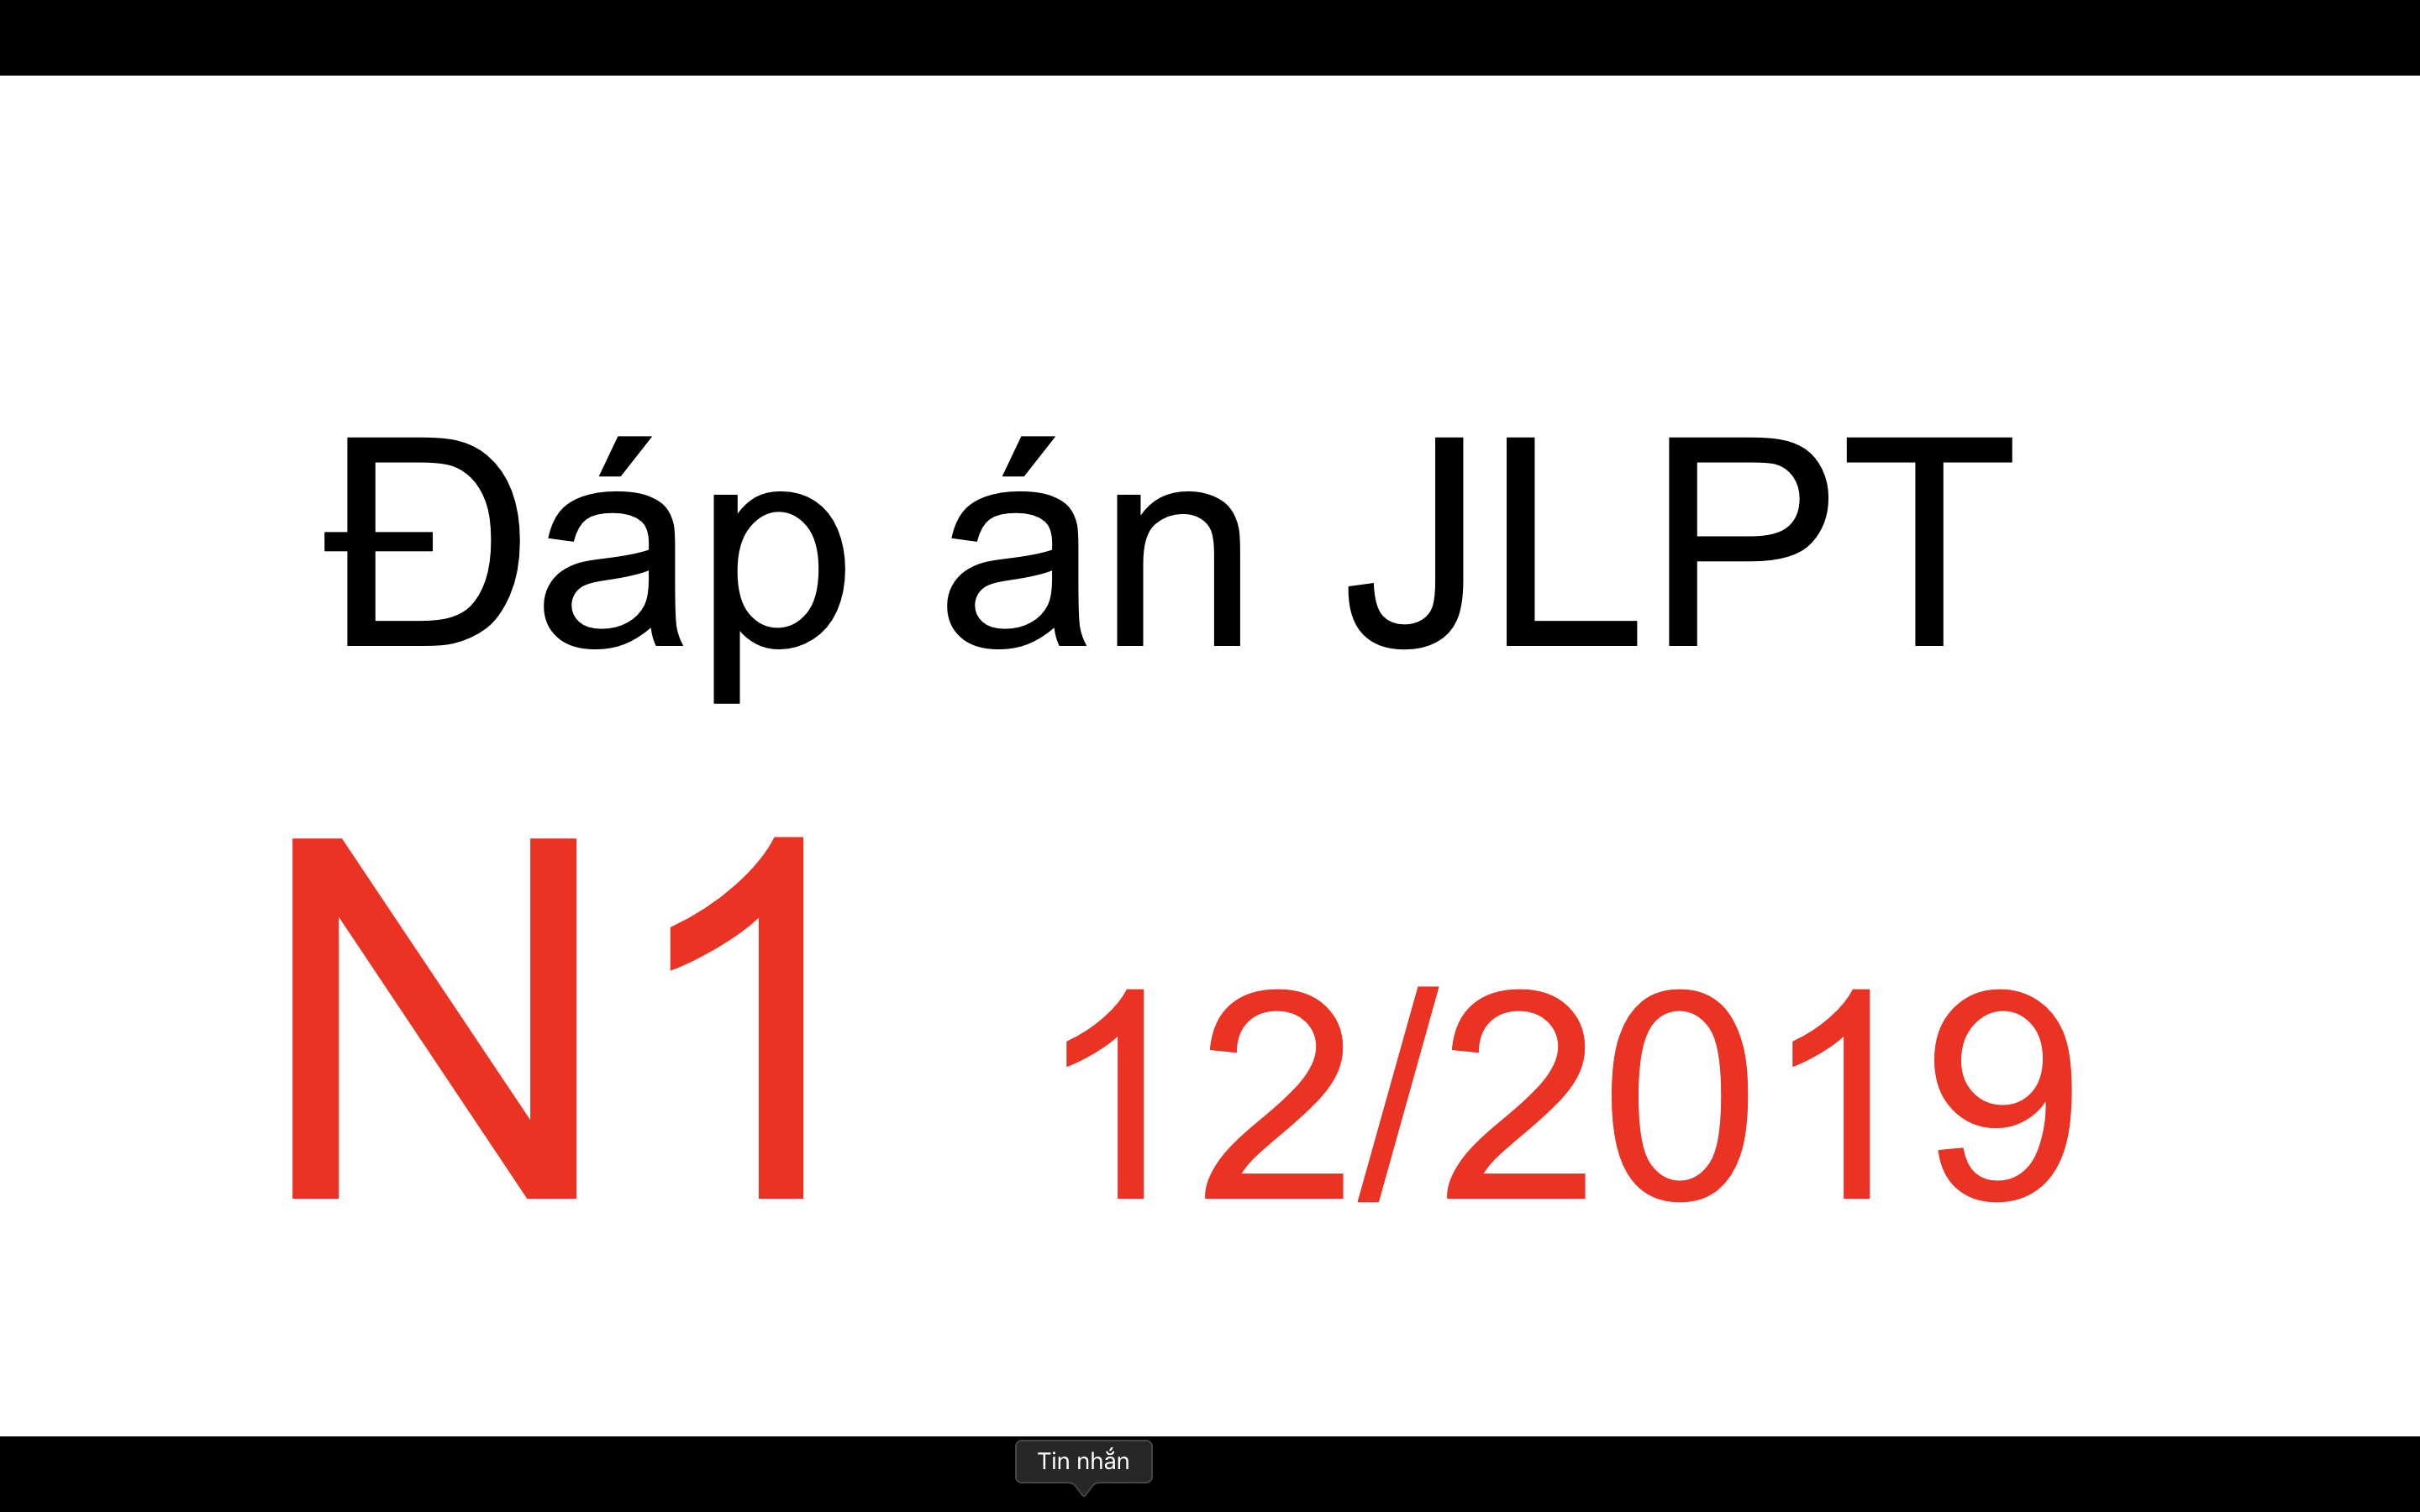 Đáp án kỳ thi JLPT 12/2019 mới nhất